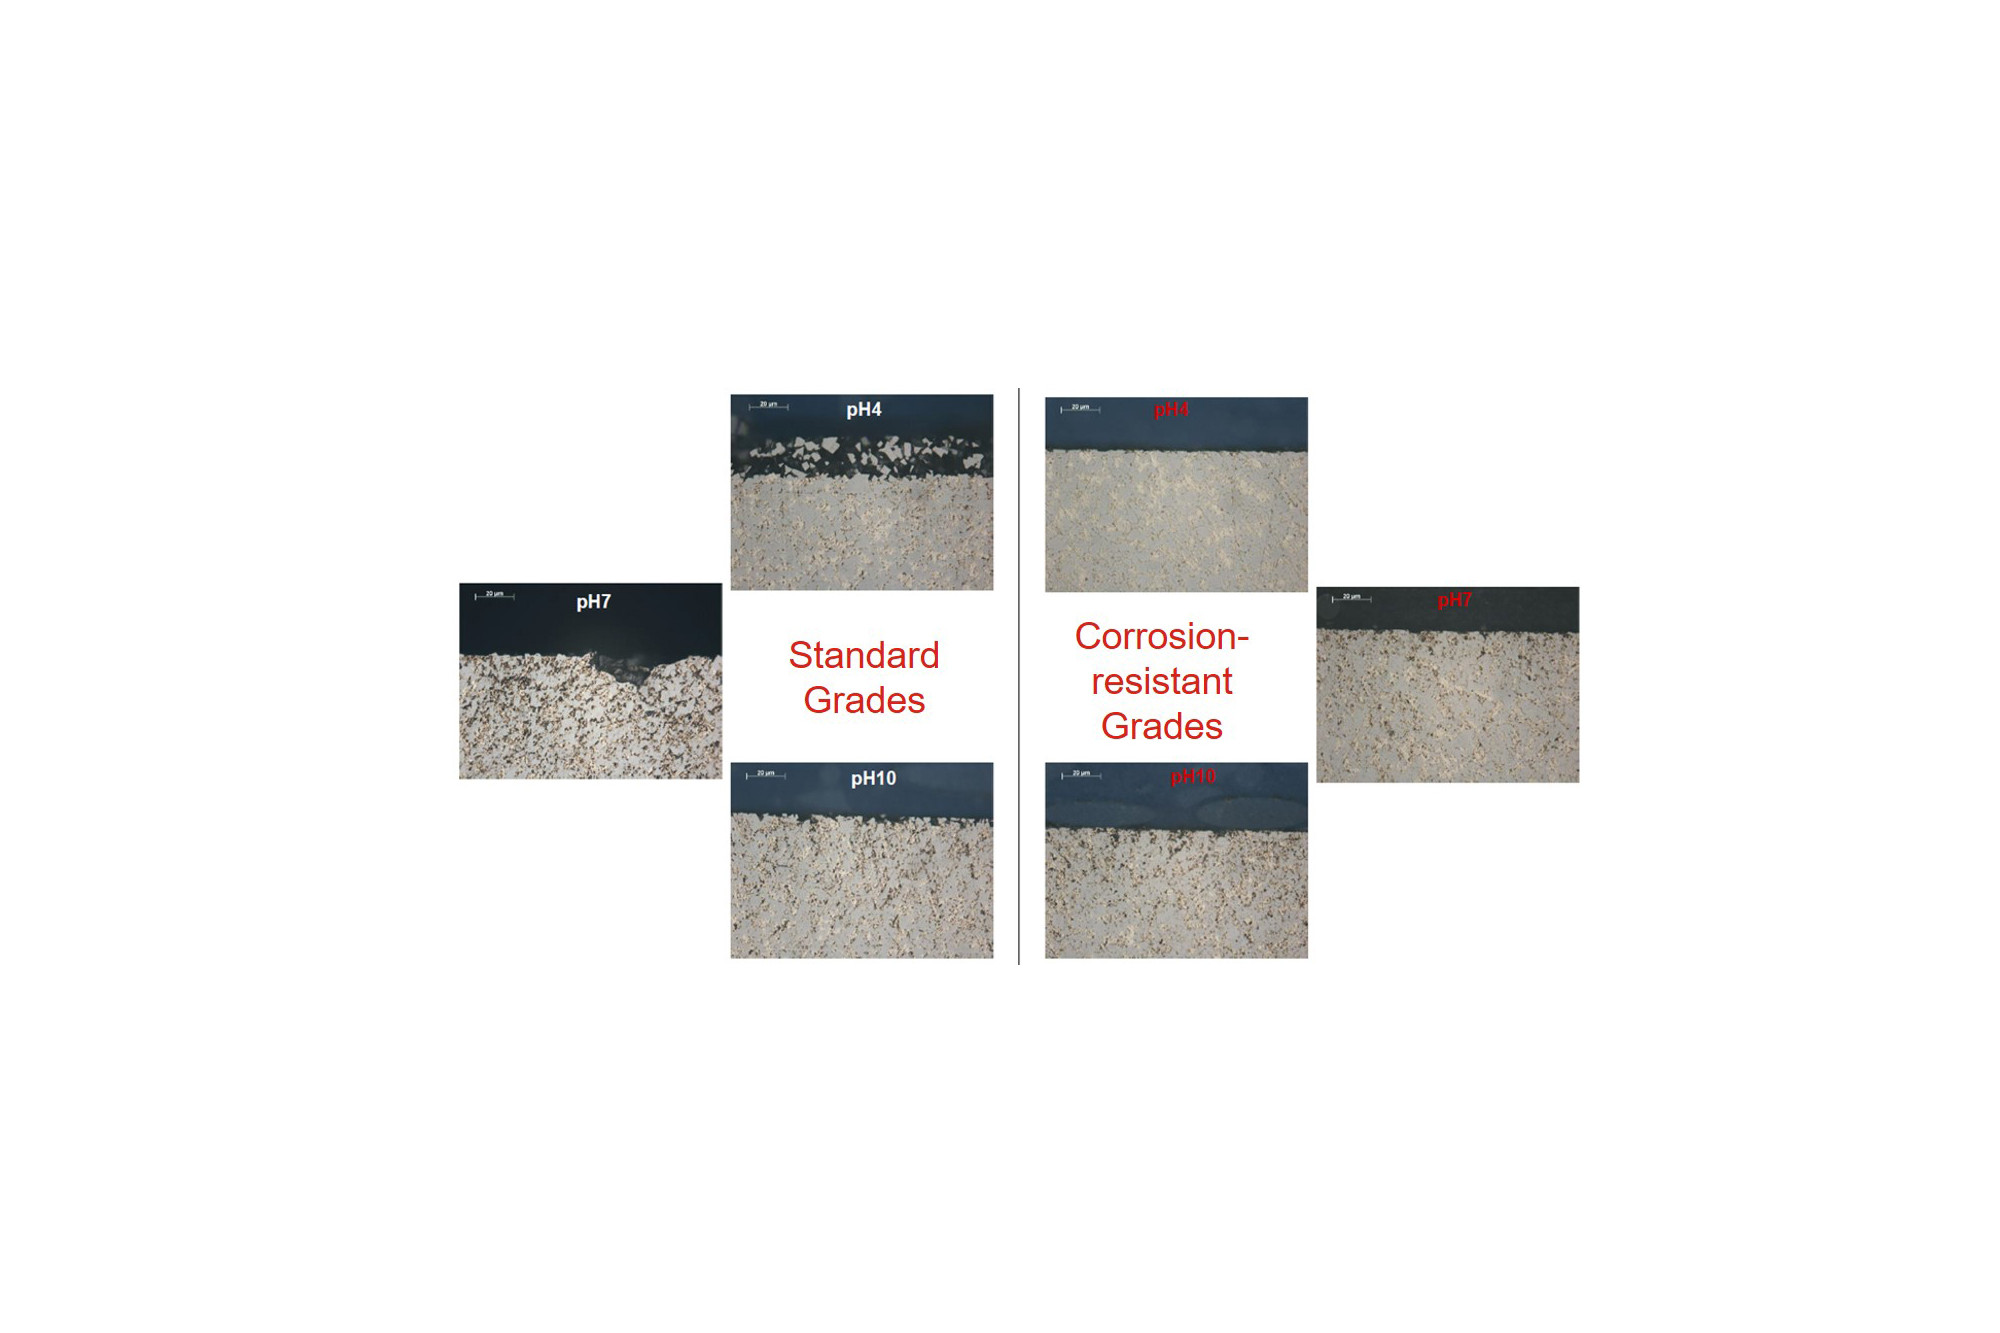 Comparison of standard grades and corrosion-resistant grades